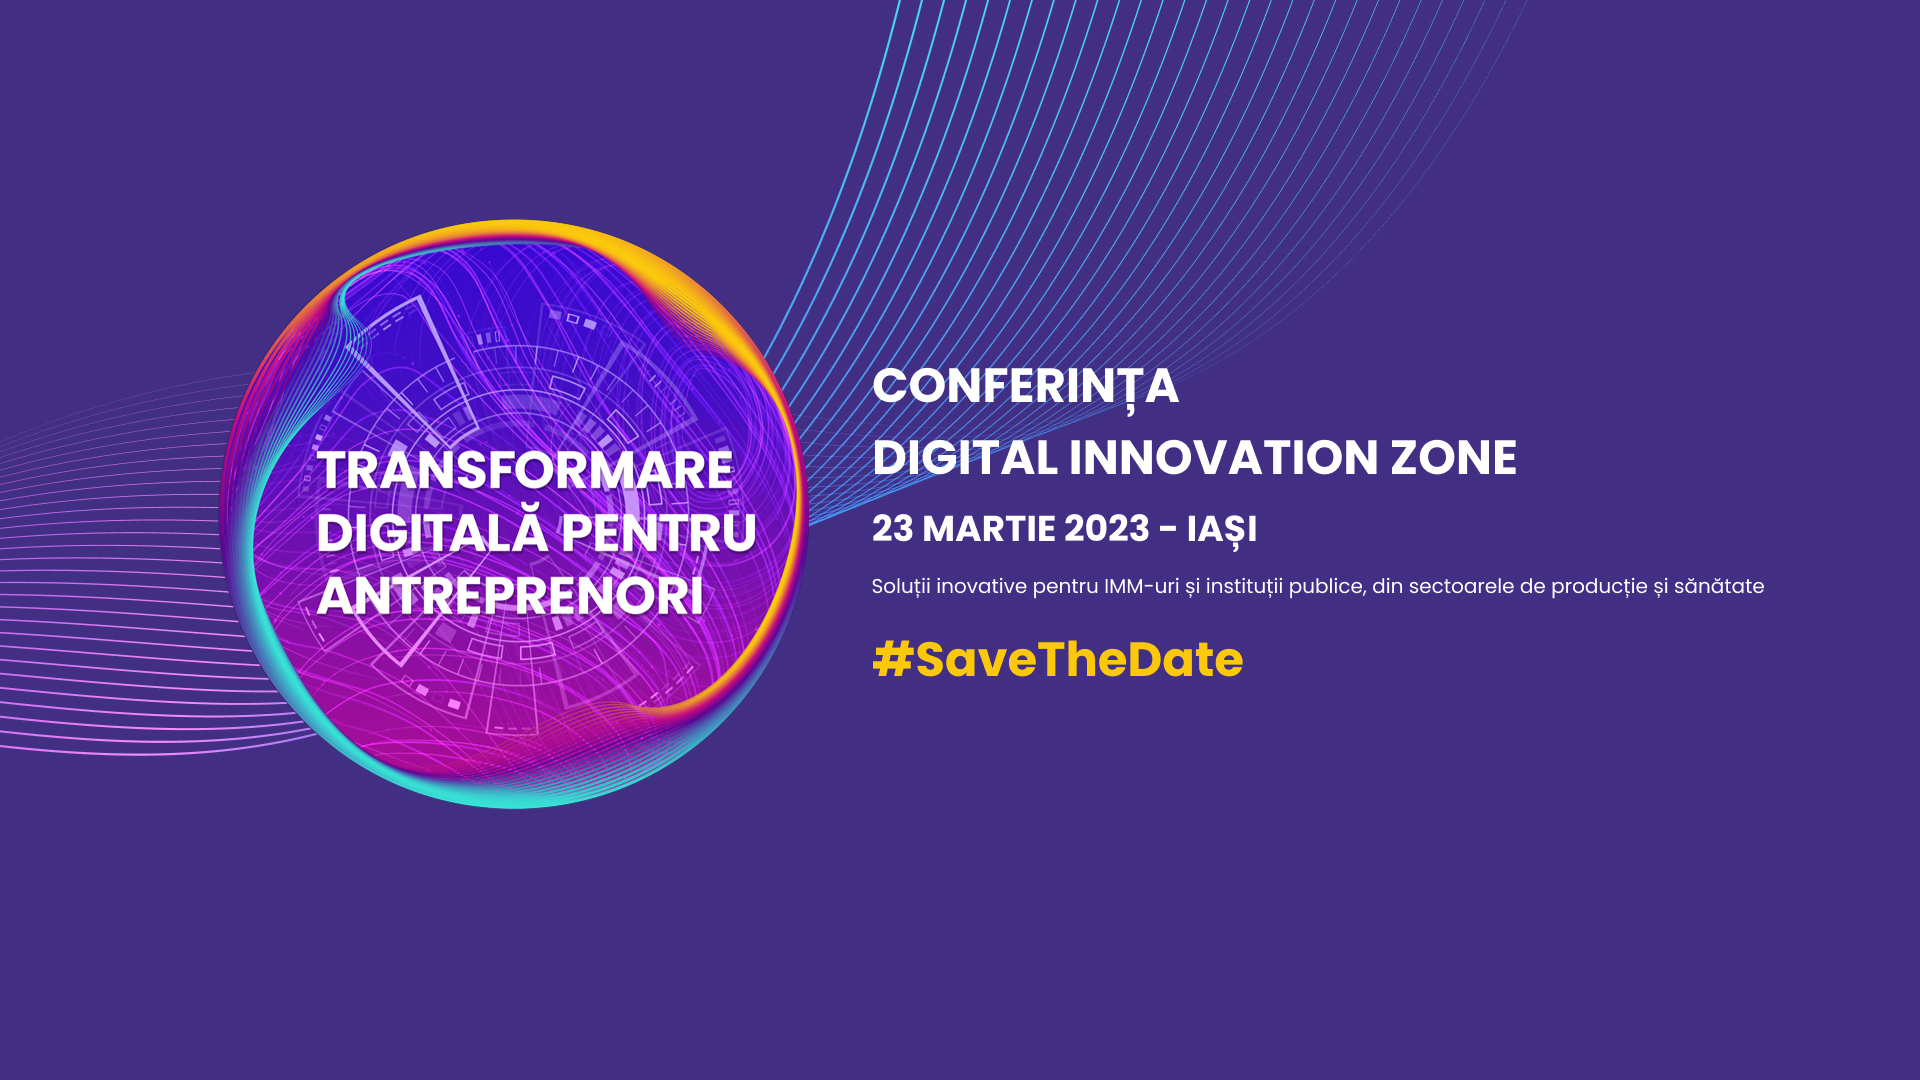 Conferința Digital Innovation Zone, 23 martie 2023, Iași: Soluții inovative pentru IMM-uri și instituții publice, din sectoarele de producție și sănătate